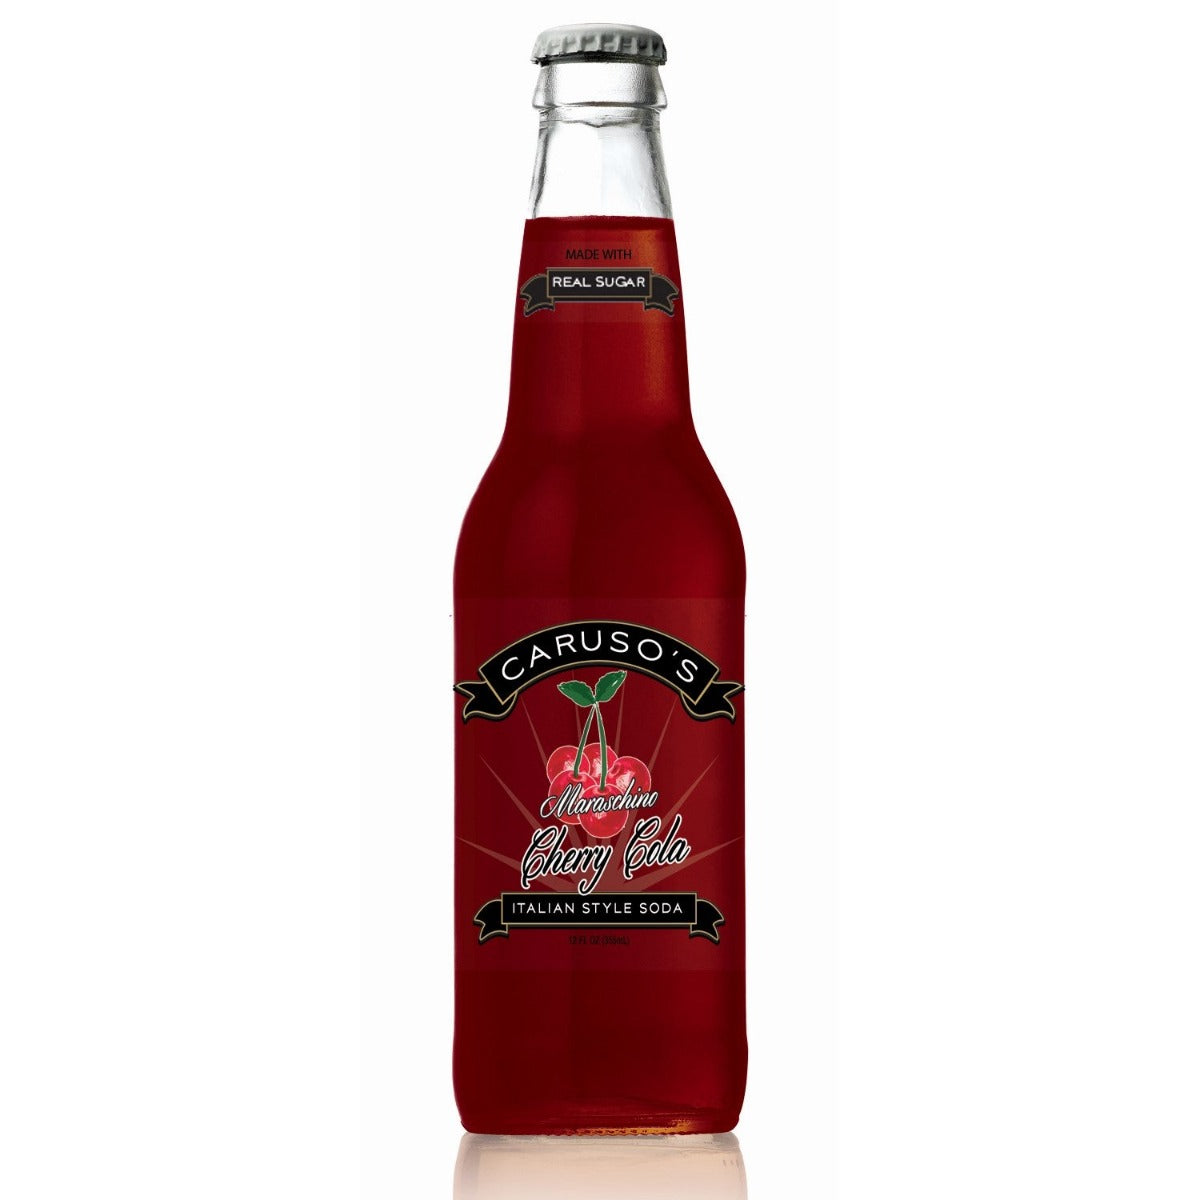 12oz bottle of Caruso's Maraschino Cherry Cola